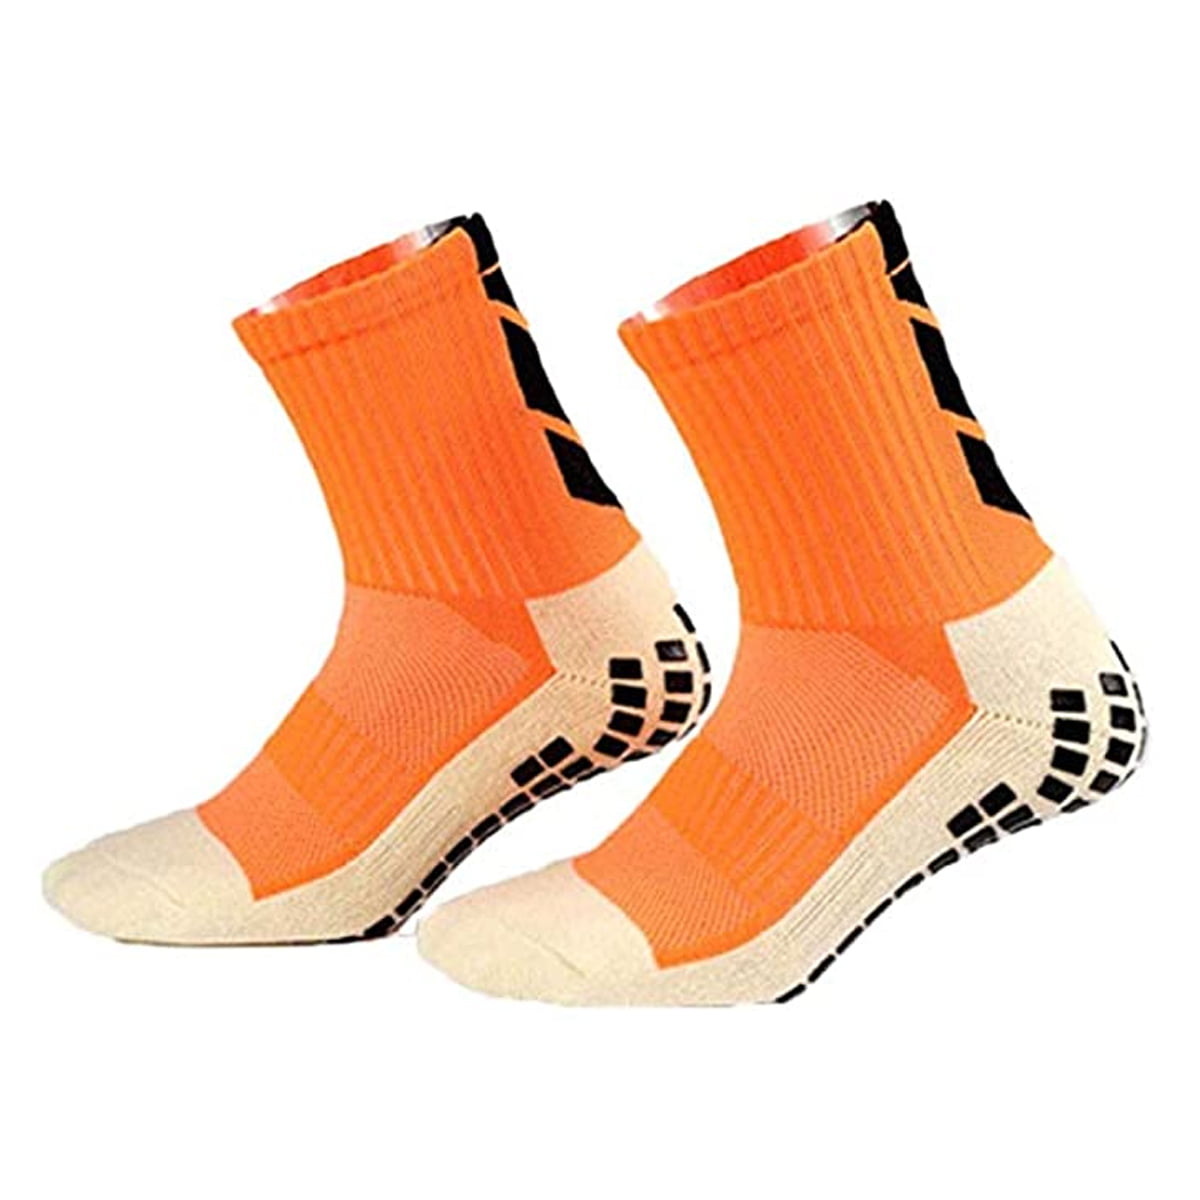 Sport Socks Anti Slip Football Basketball Ankle Sock Casual Socks Unisex New 